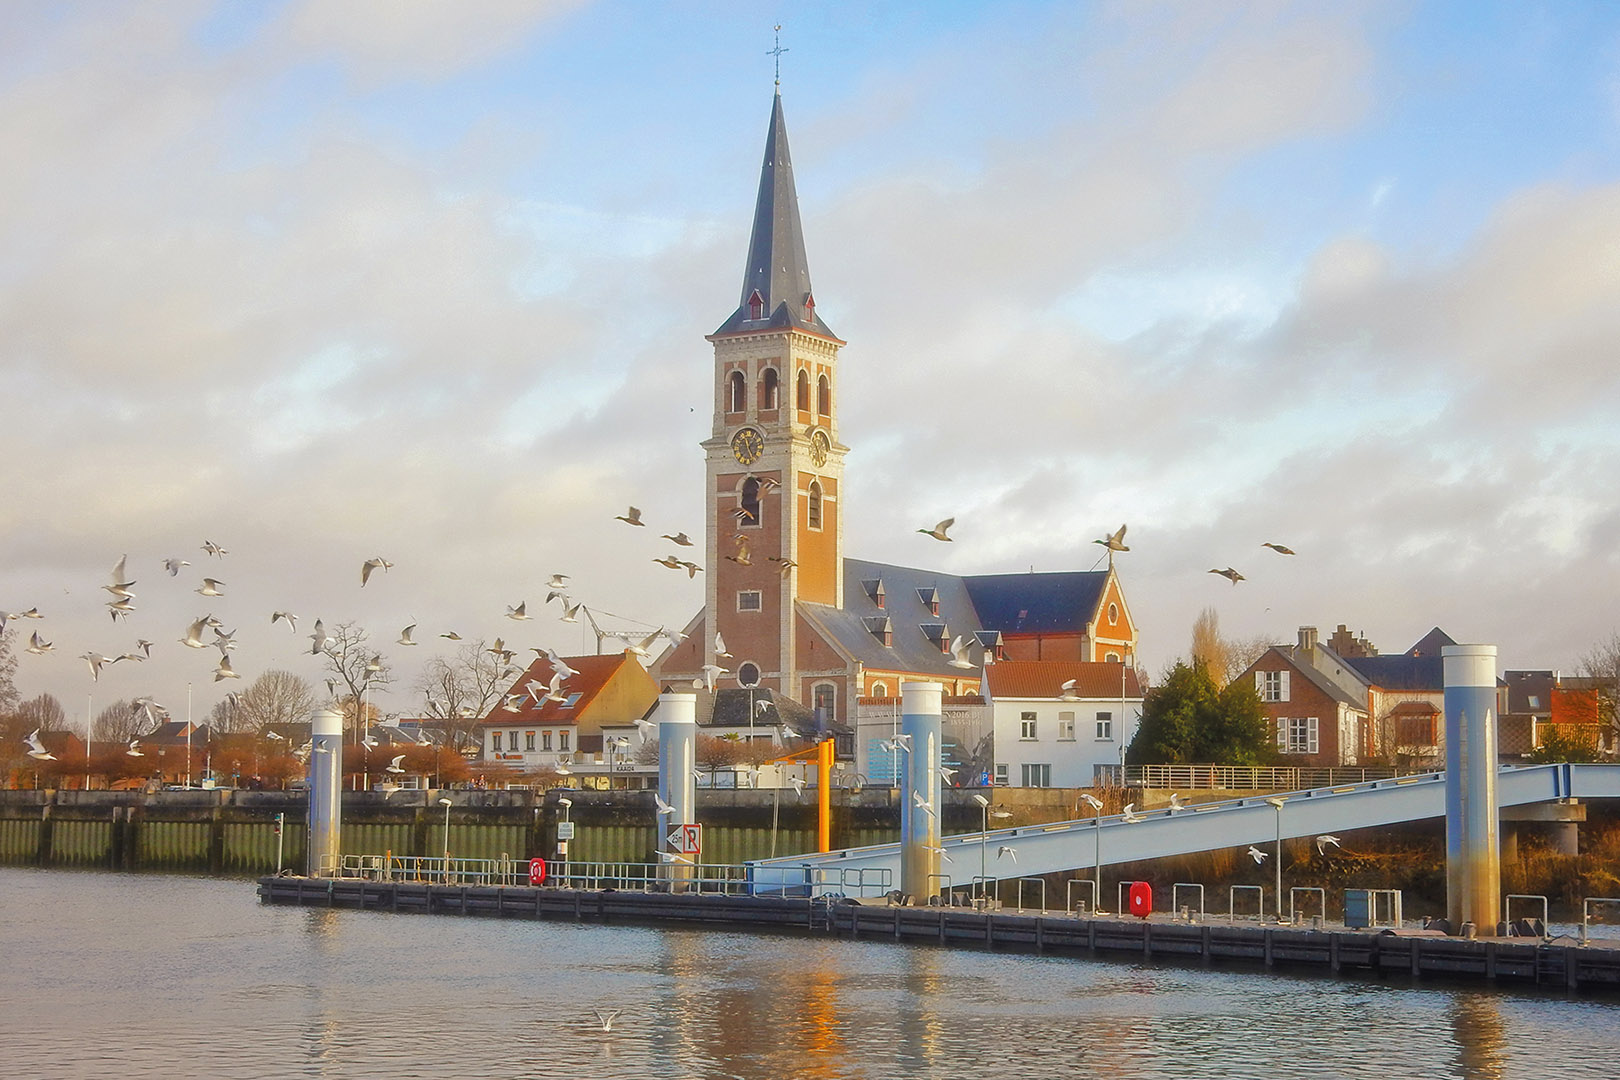 fotoreeks Ontdek het Scheldeland per boot met bezoek aan Rupelmonde en Sint-Amands, met vertrek vanuit Schellebelle of Dendermonde